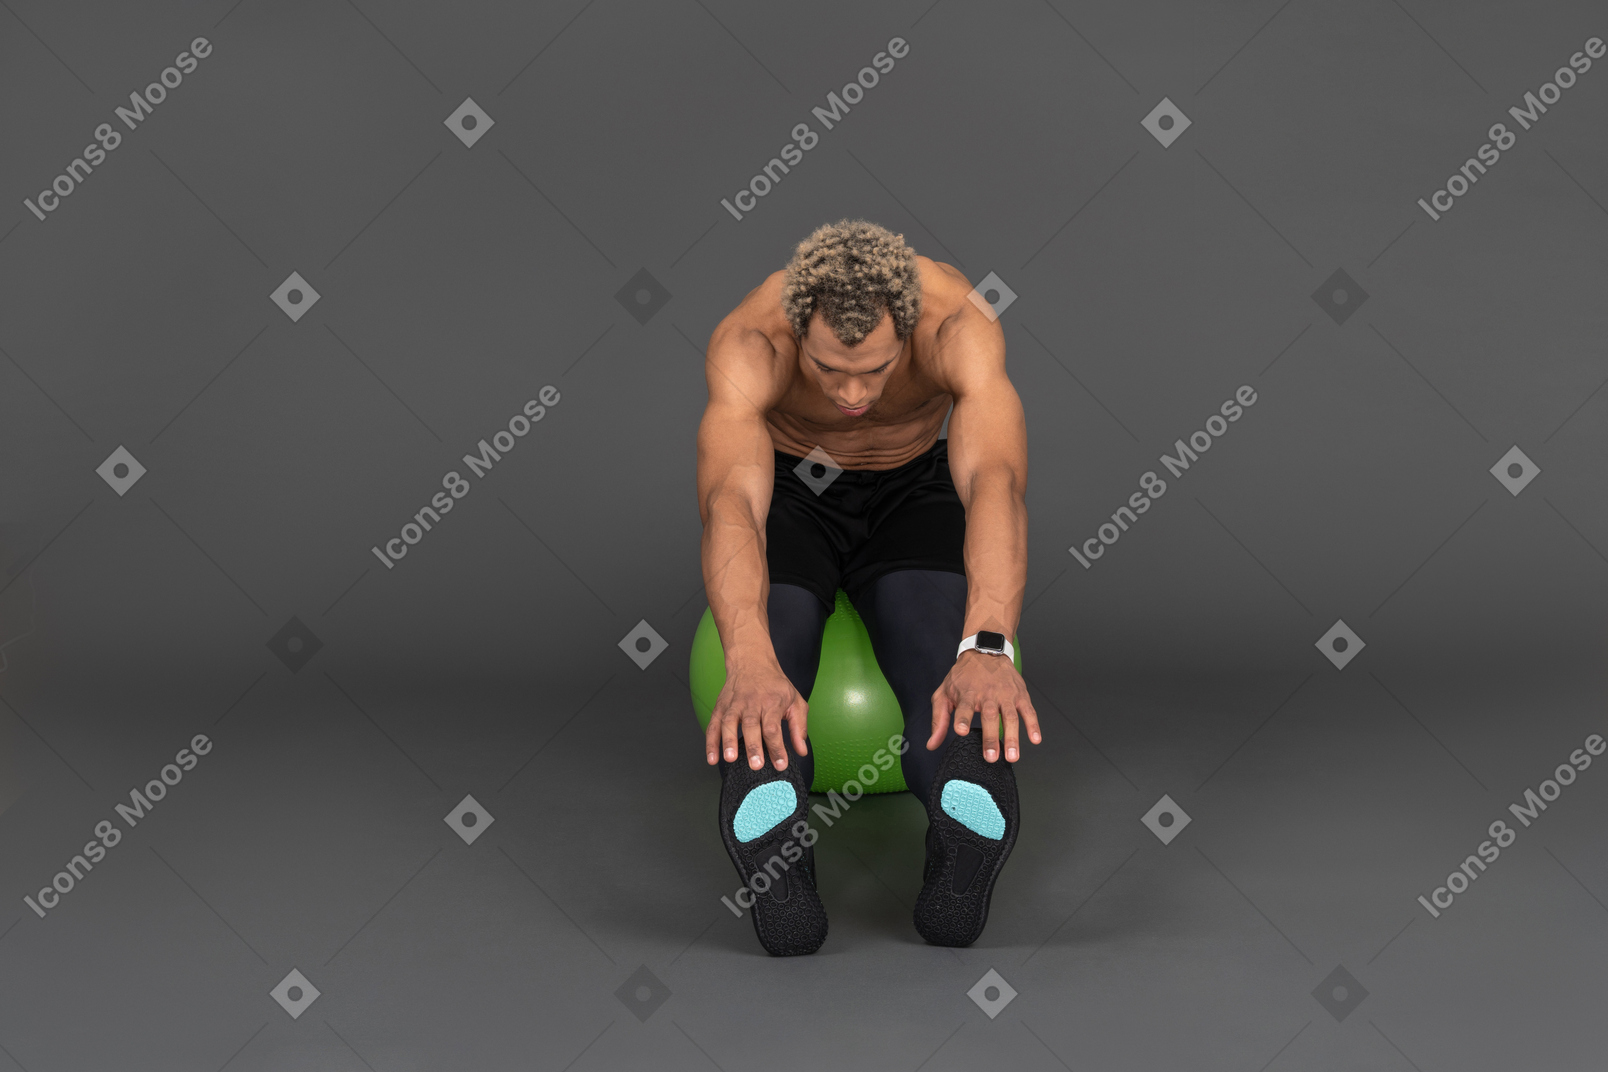 Vista frontal de un hombre afro sin camisa que se extiende mientras está sentado en una pelota de gimnasia verde